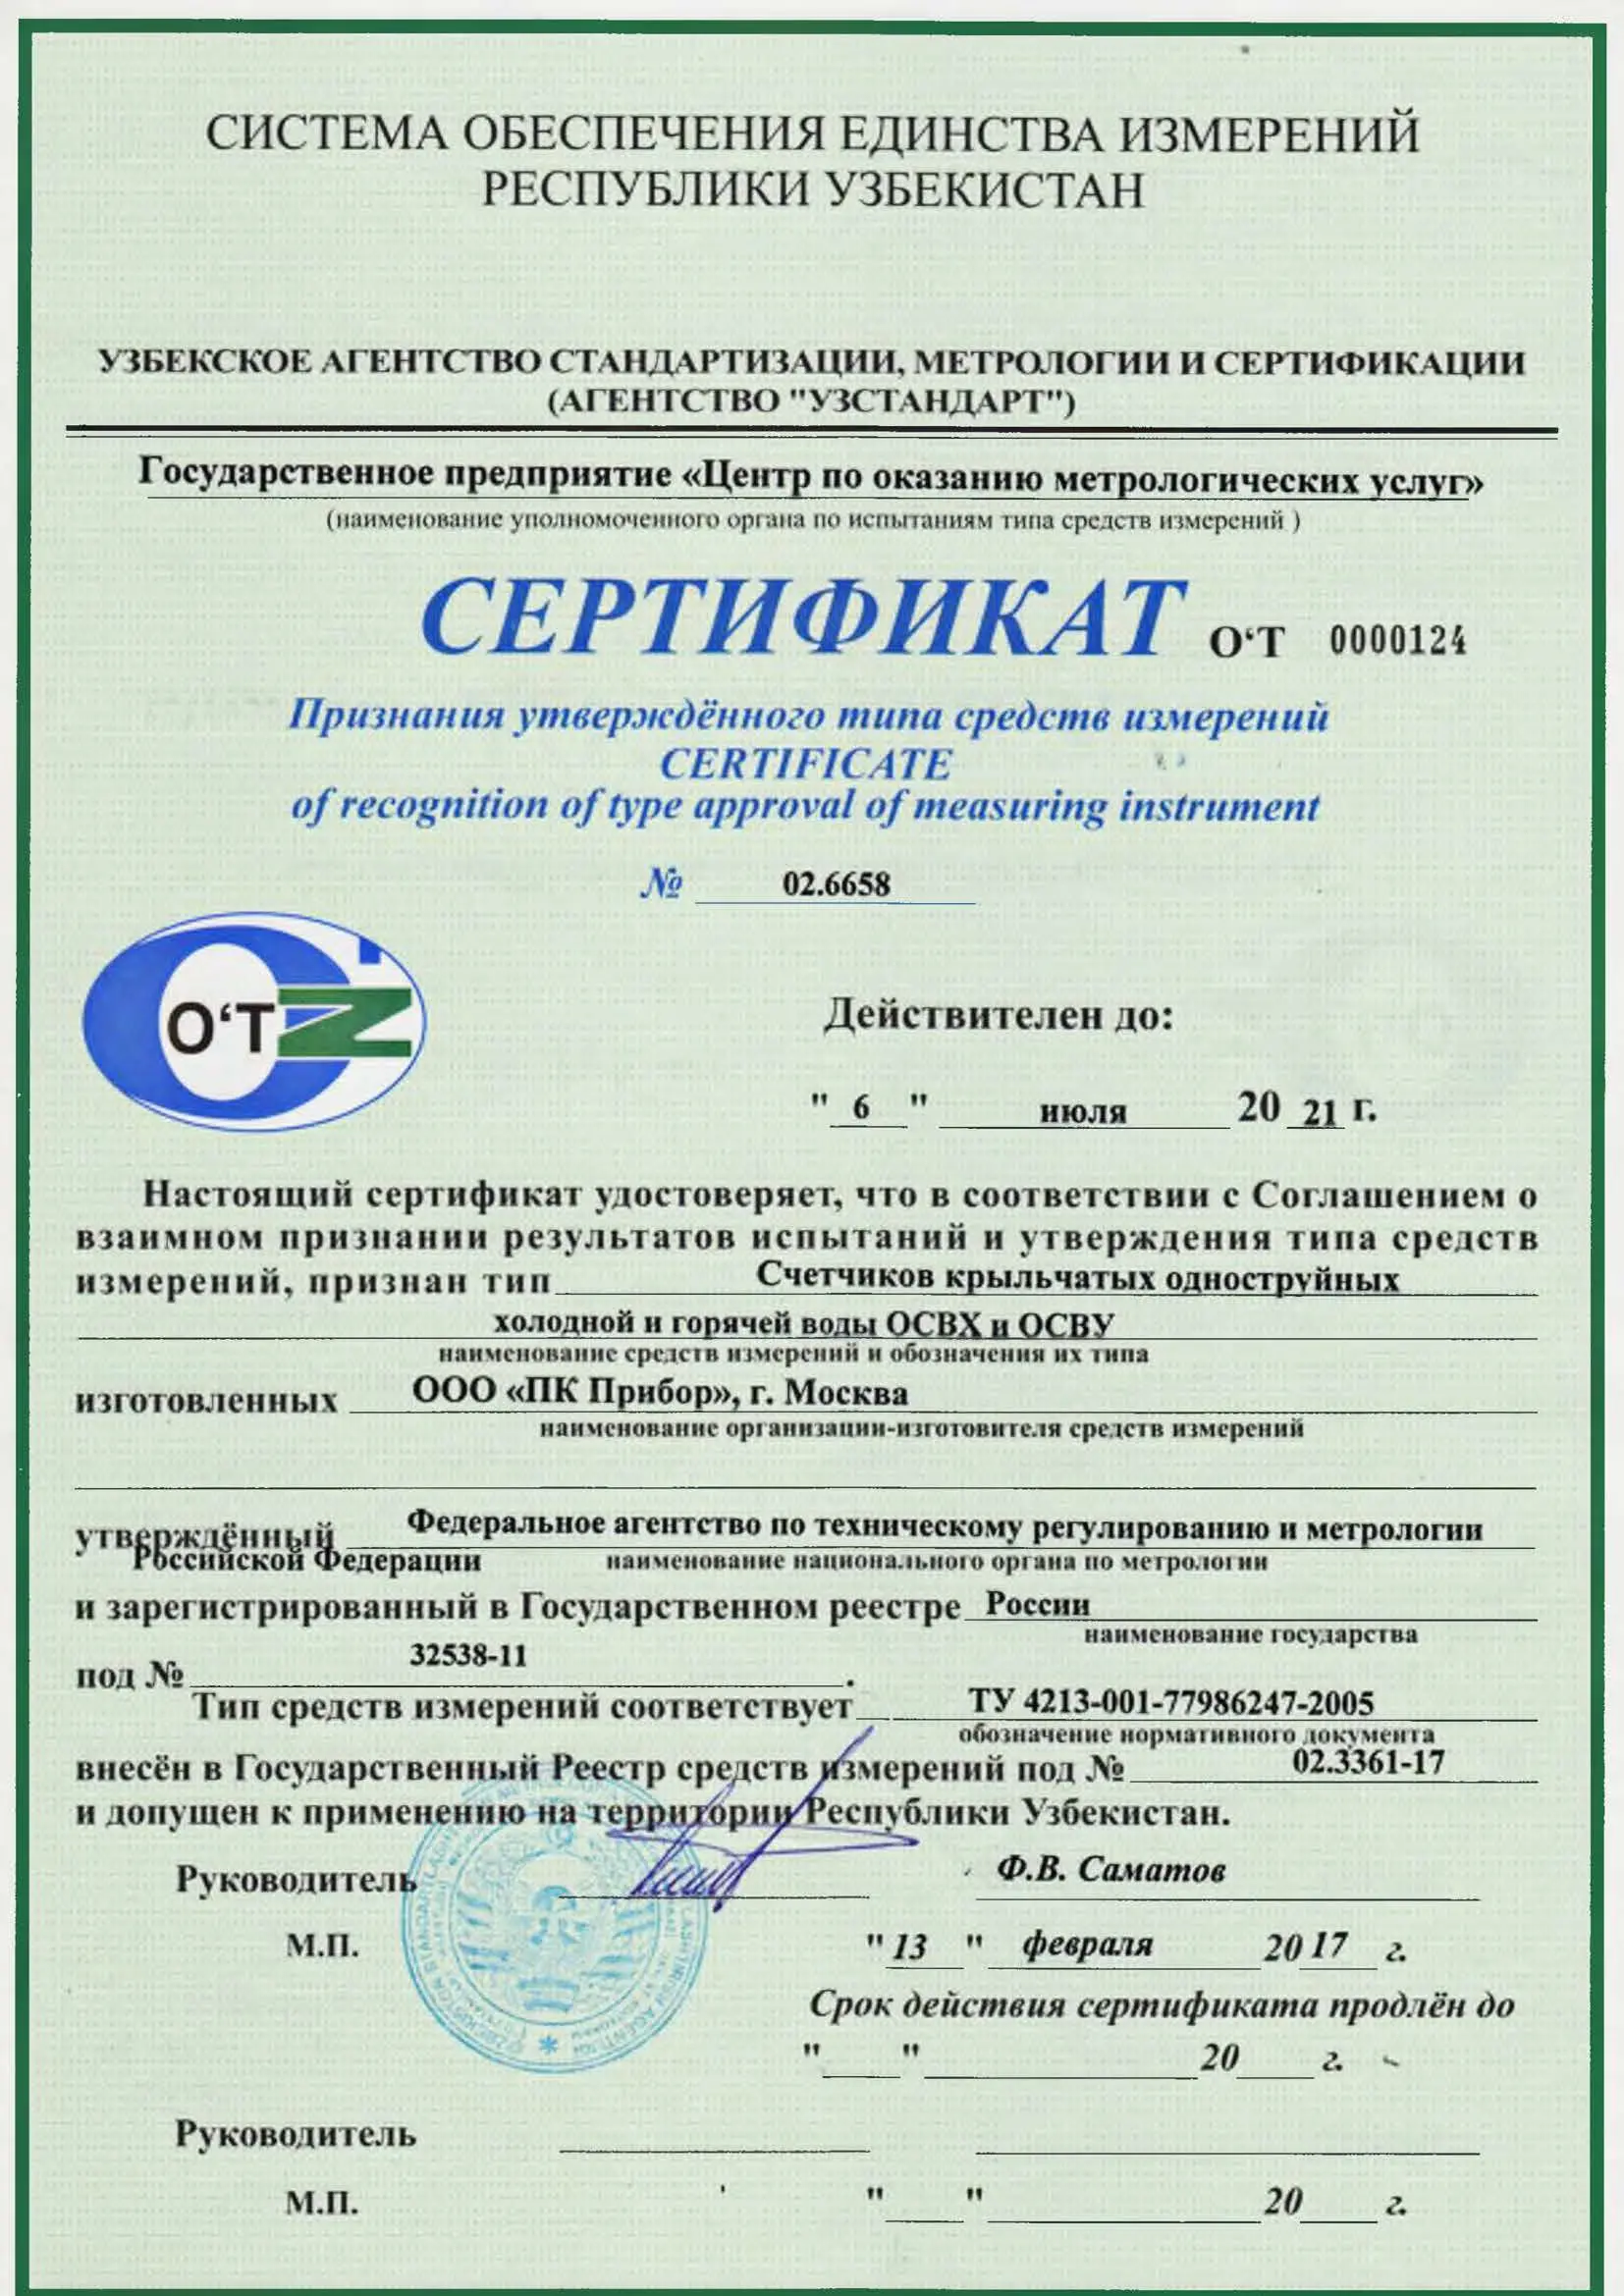 Сертификат признания утверждённого типа ОСВХ и ОСВУ, Узбекистан, до 06.07.2021 (архив)